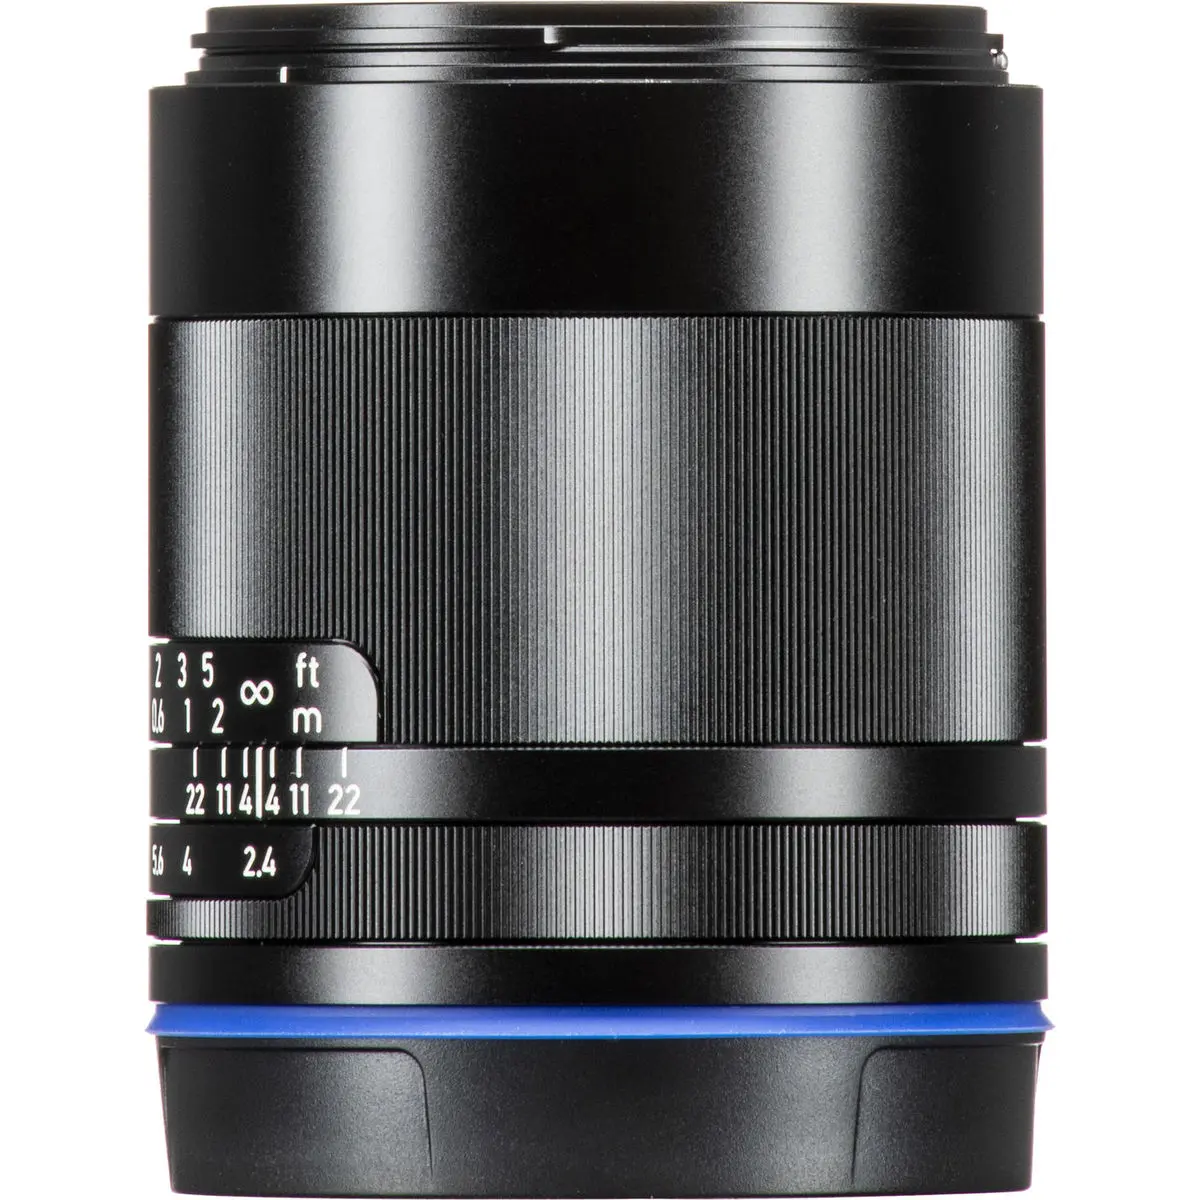 8. Carl Zeiss Loxia 2.4/25 (Sony FE) Lens